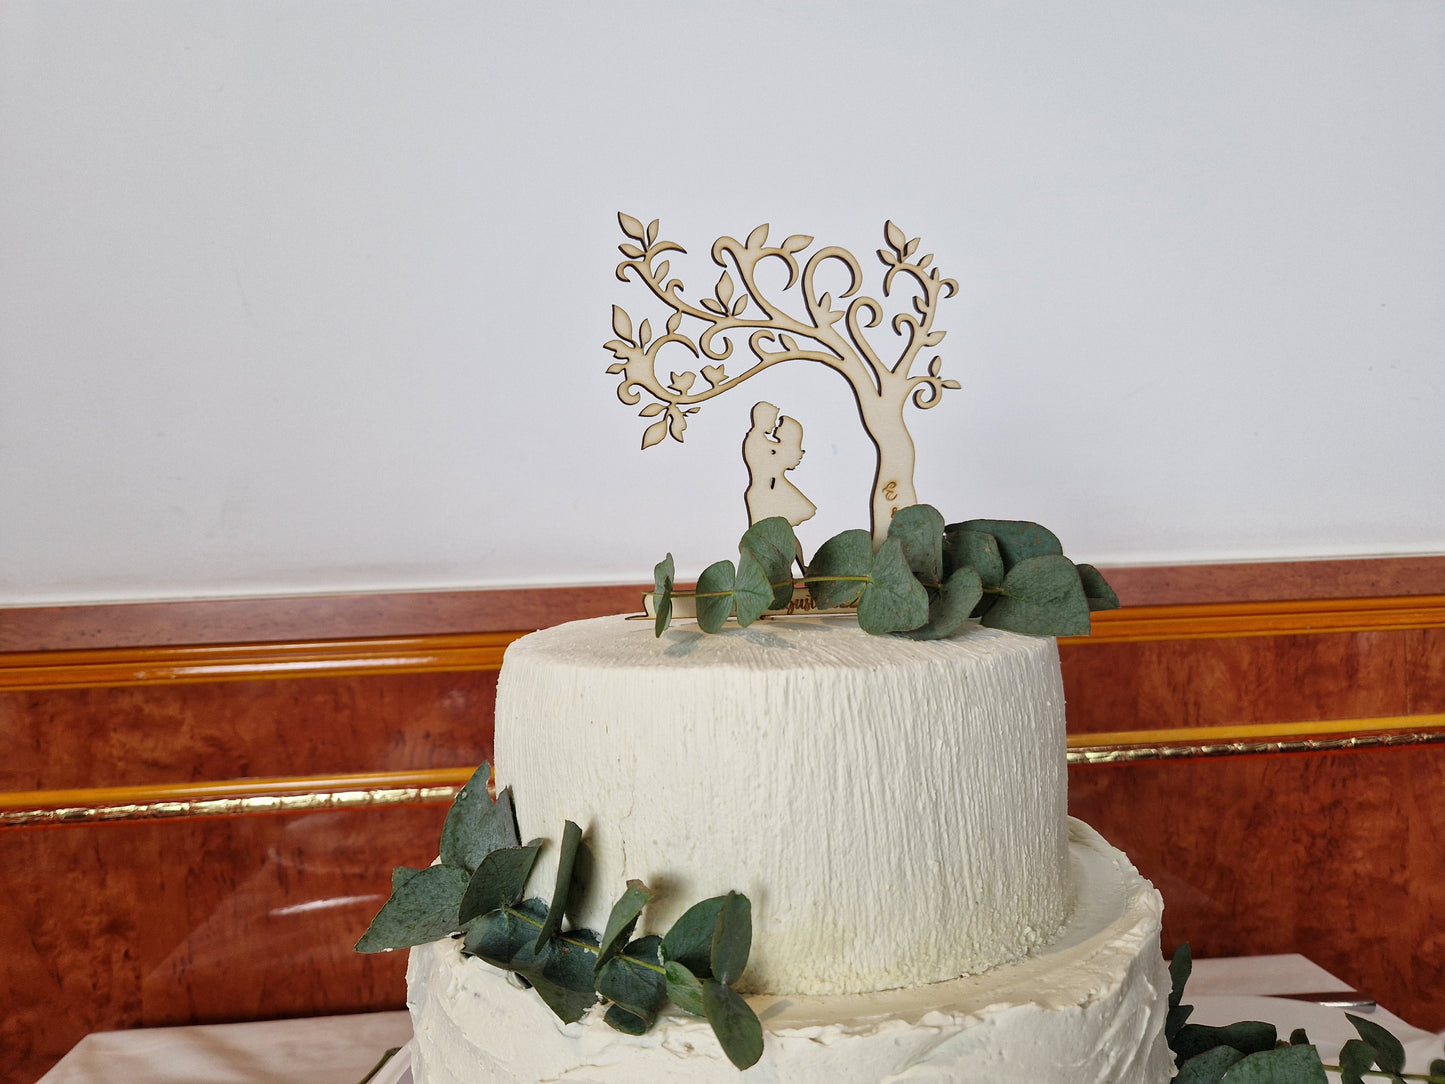 Caketopper / Tortenstecker für Hochzeit, Verlobung, Trauung aus Holz oder Acrylglas